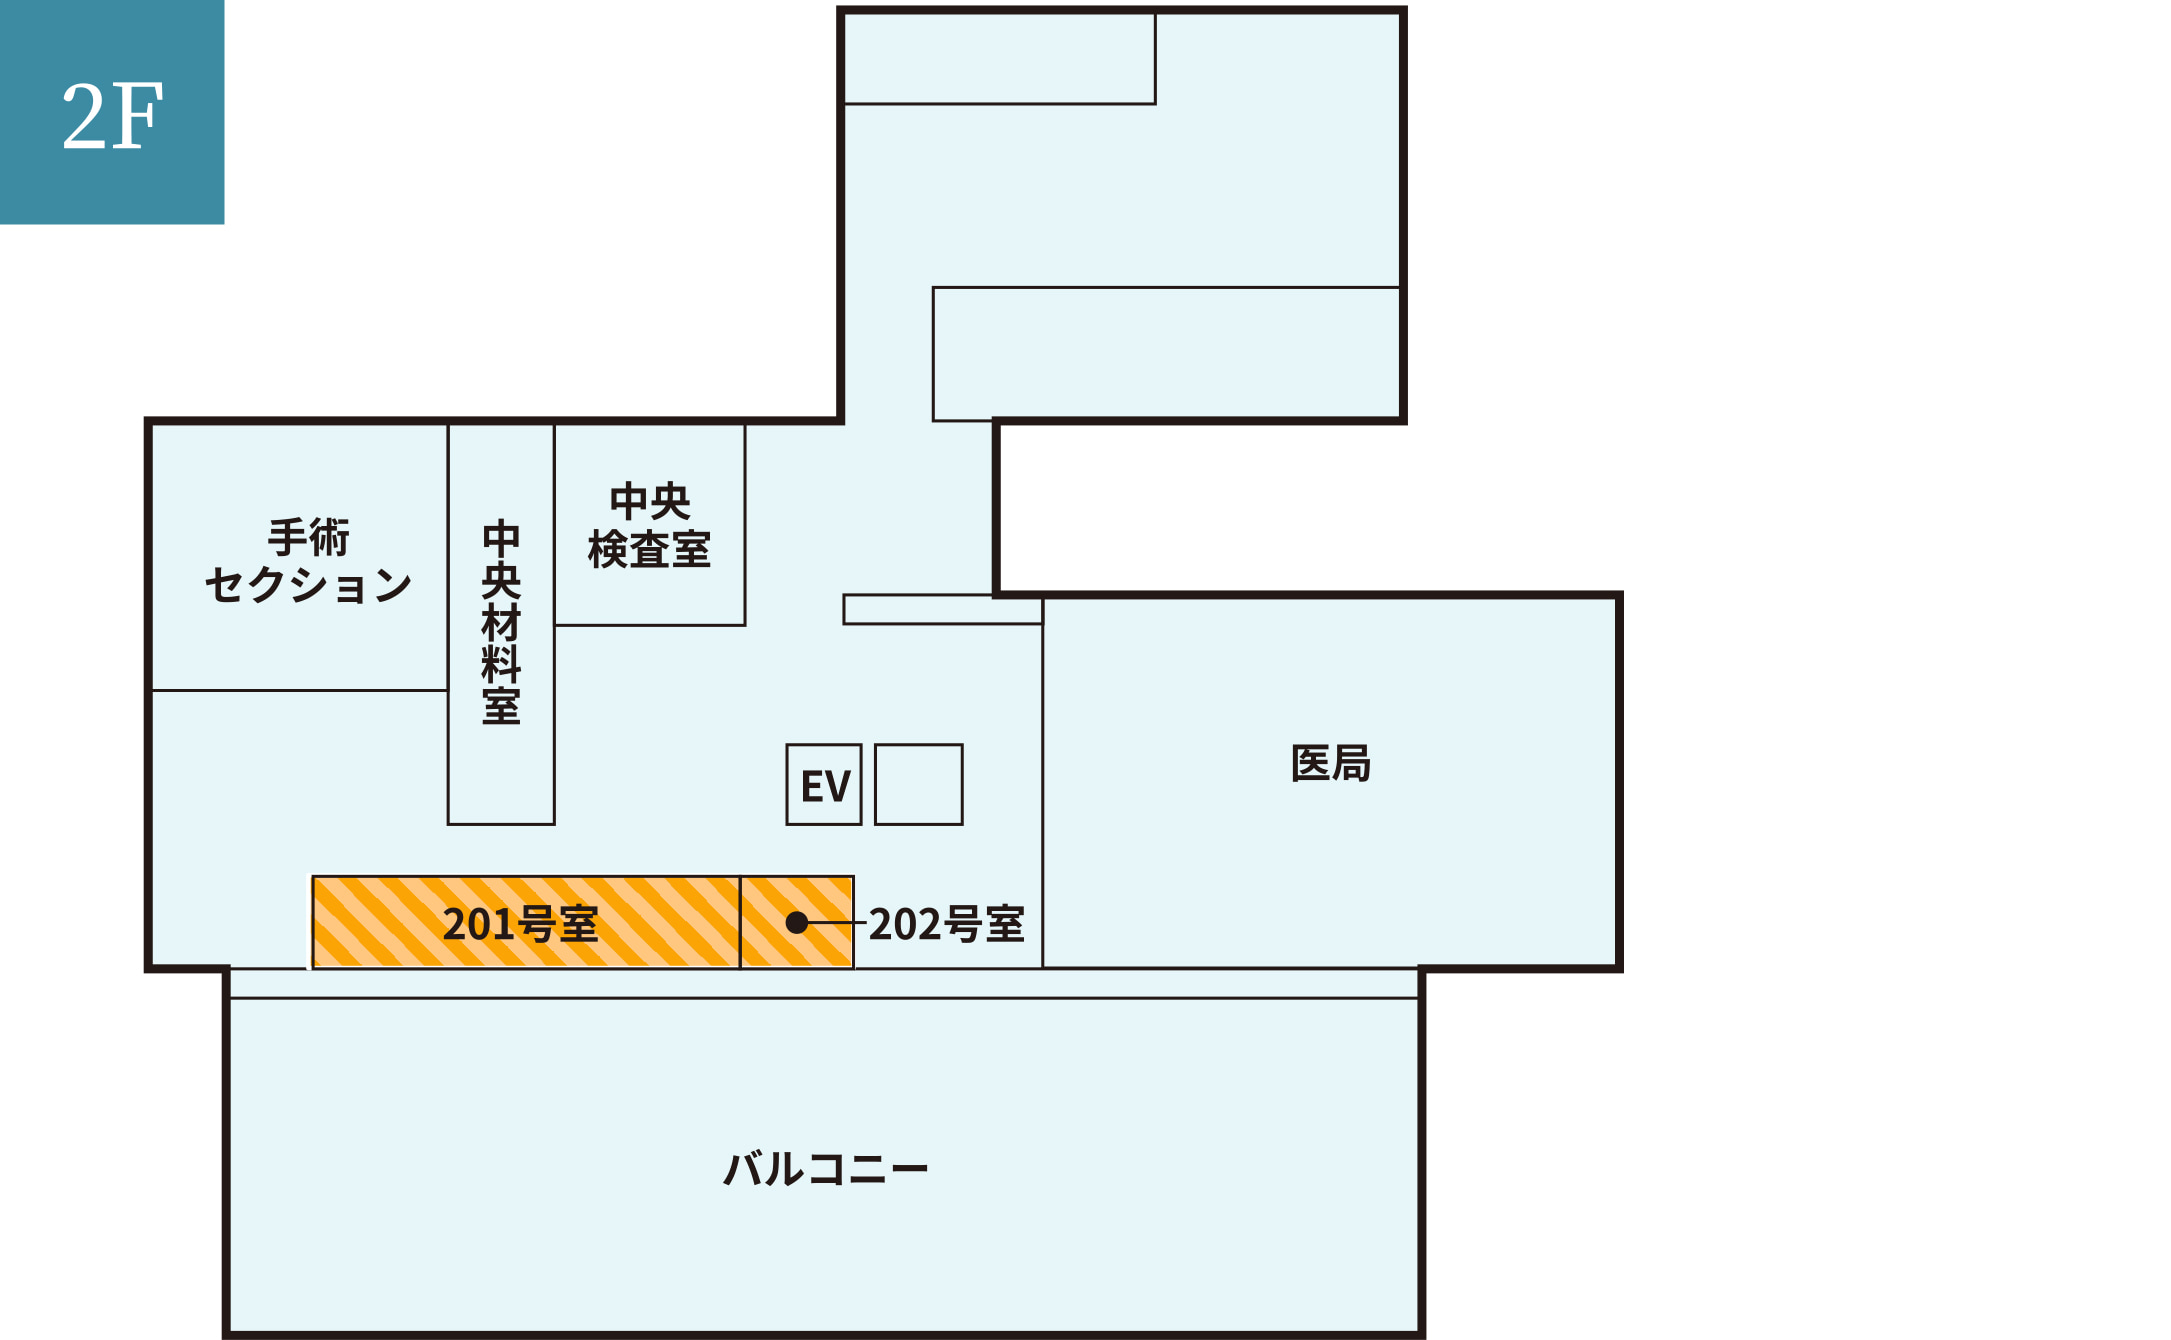 フリーWi-Fi対応エリア　姫路中央病院2F